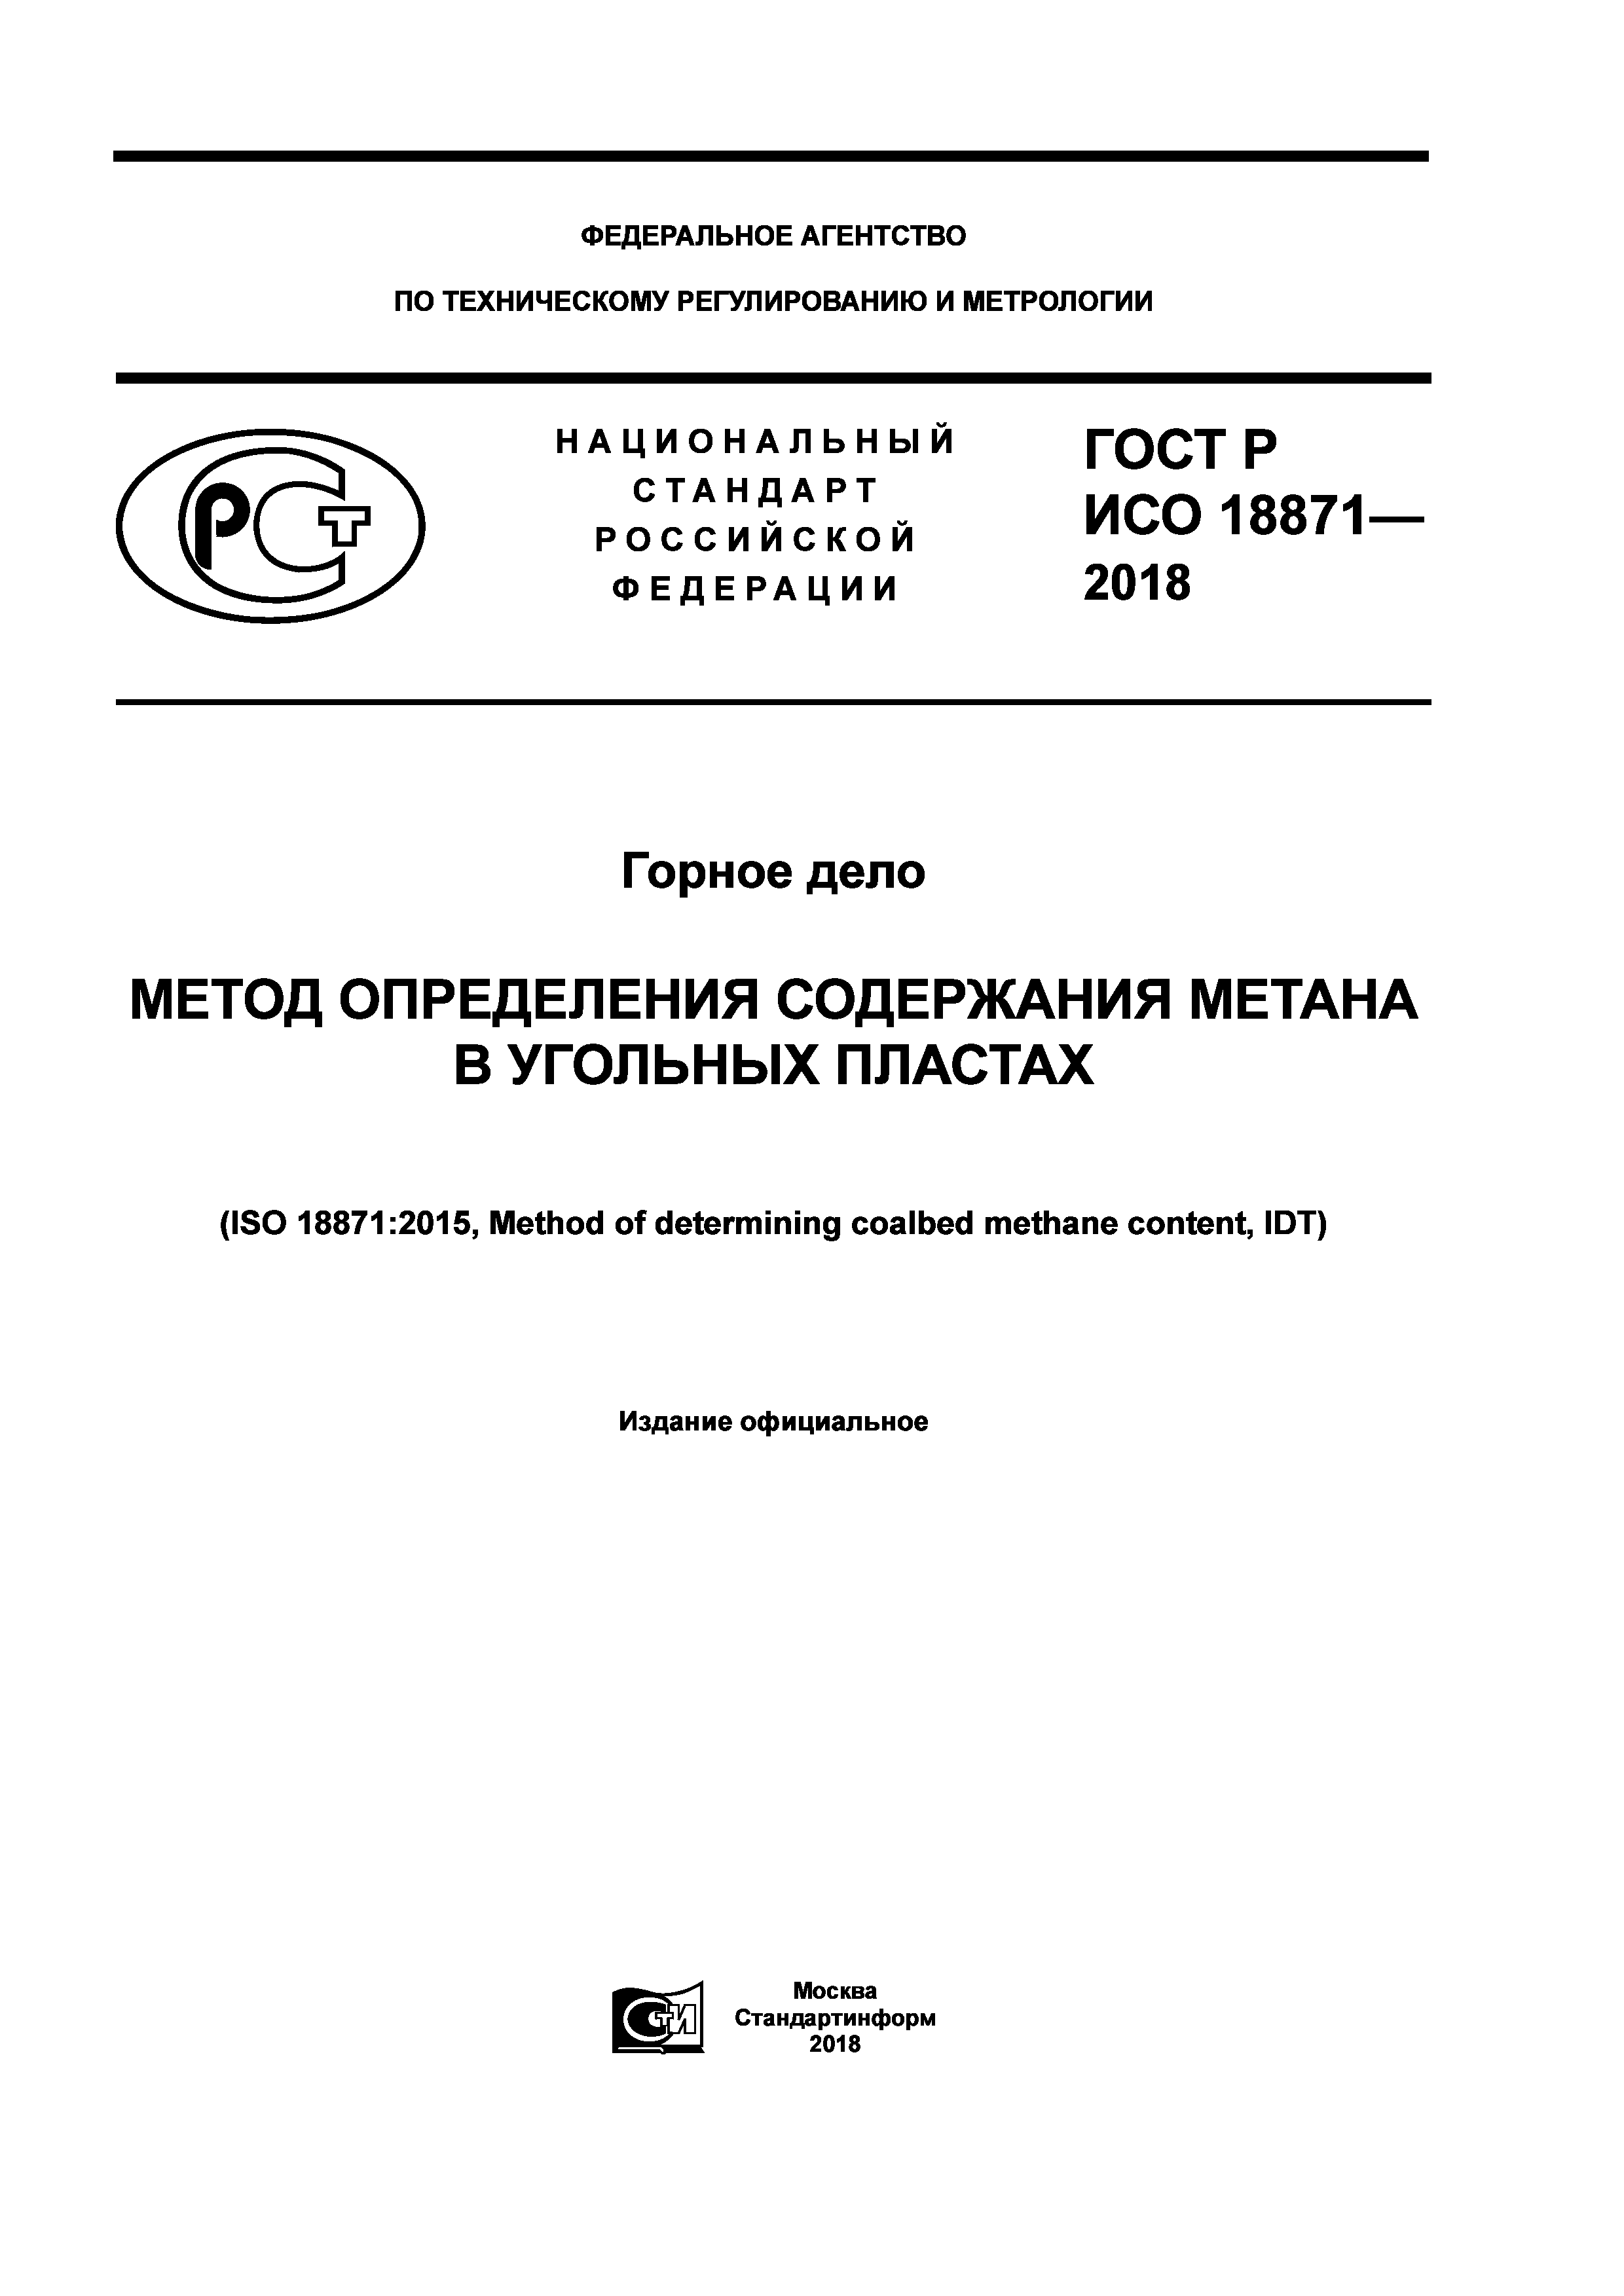 ГОСТ Р ИСО 18871-2018